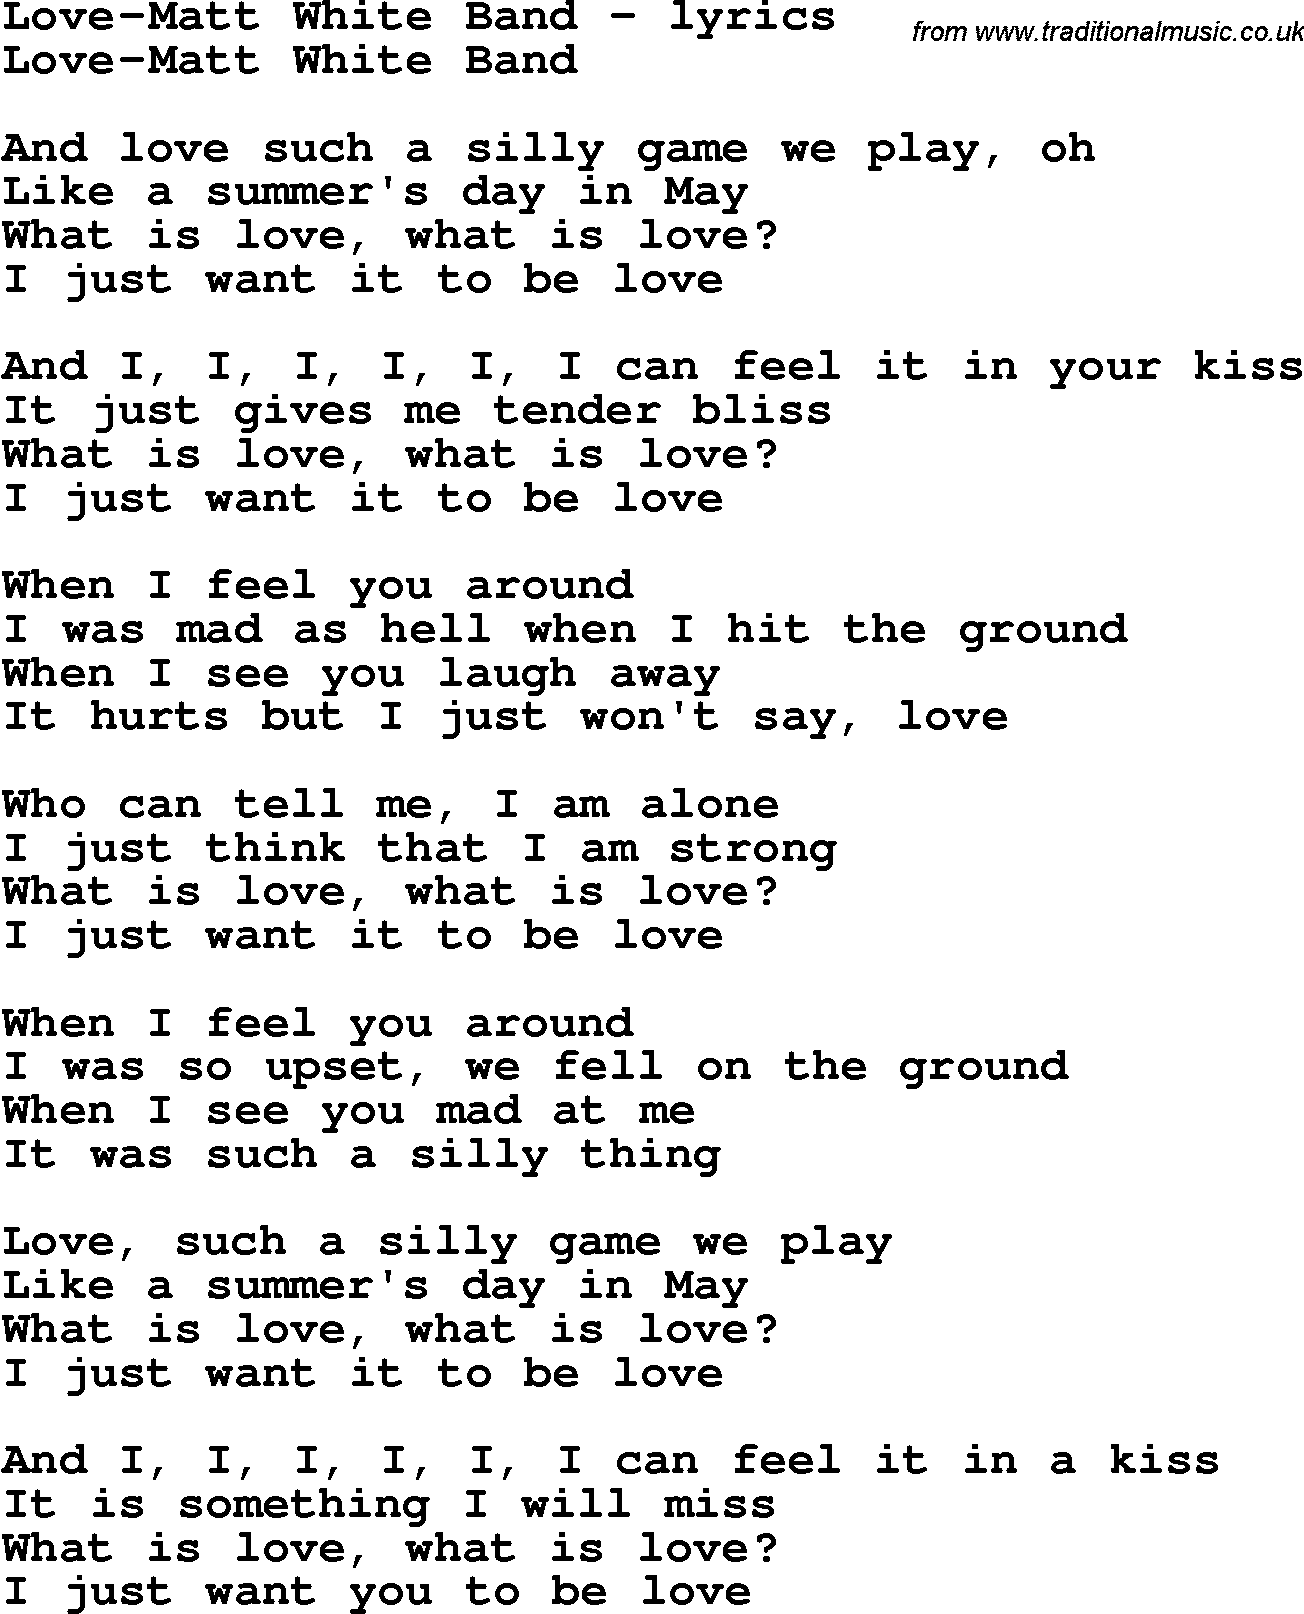 Love Song Lyrics for: Love-Matt White Band